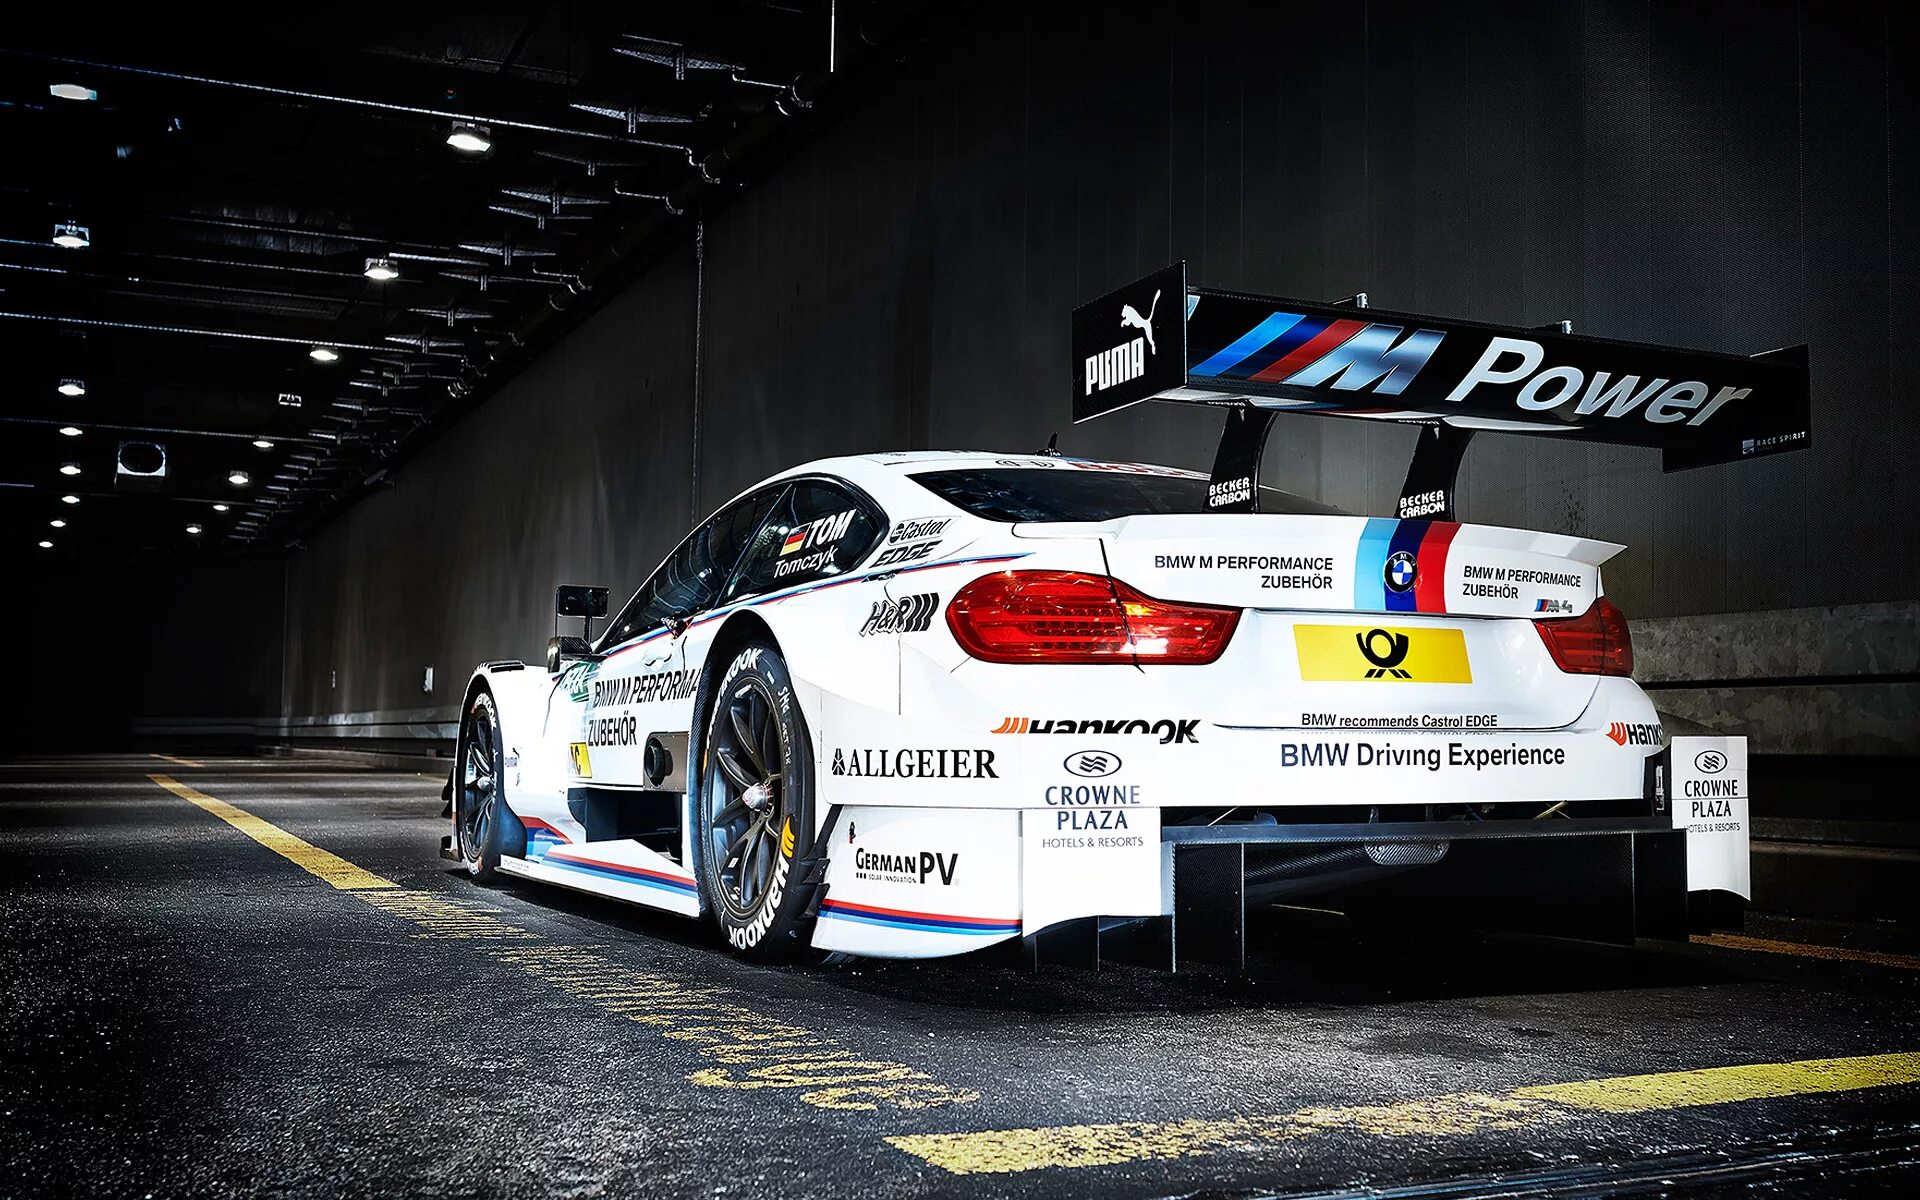 Bmw m power. BMW m4 DTM. BMW m4 DTM M Power. BMW M Performance m4 Racing (2014):. BMW M Performance m4 Racing.